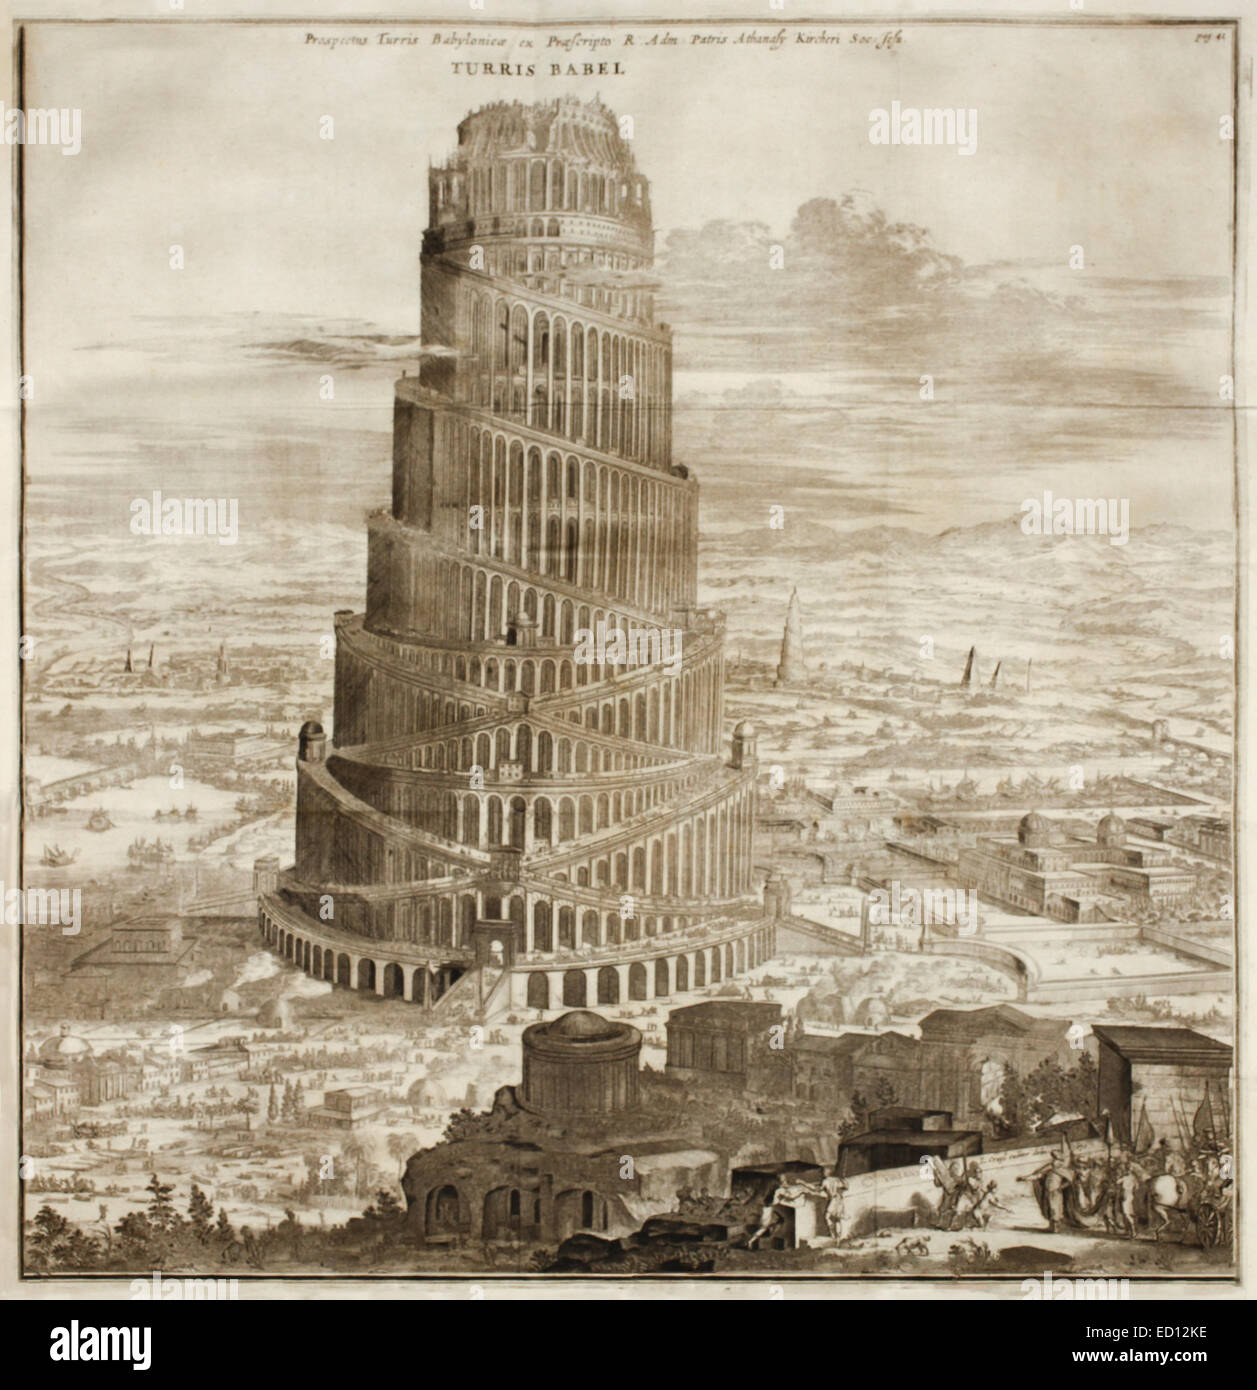 La tour de Babel,17e siècle illustration. Voir la description pour plus d'informations. Banque D'Images